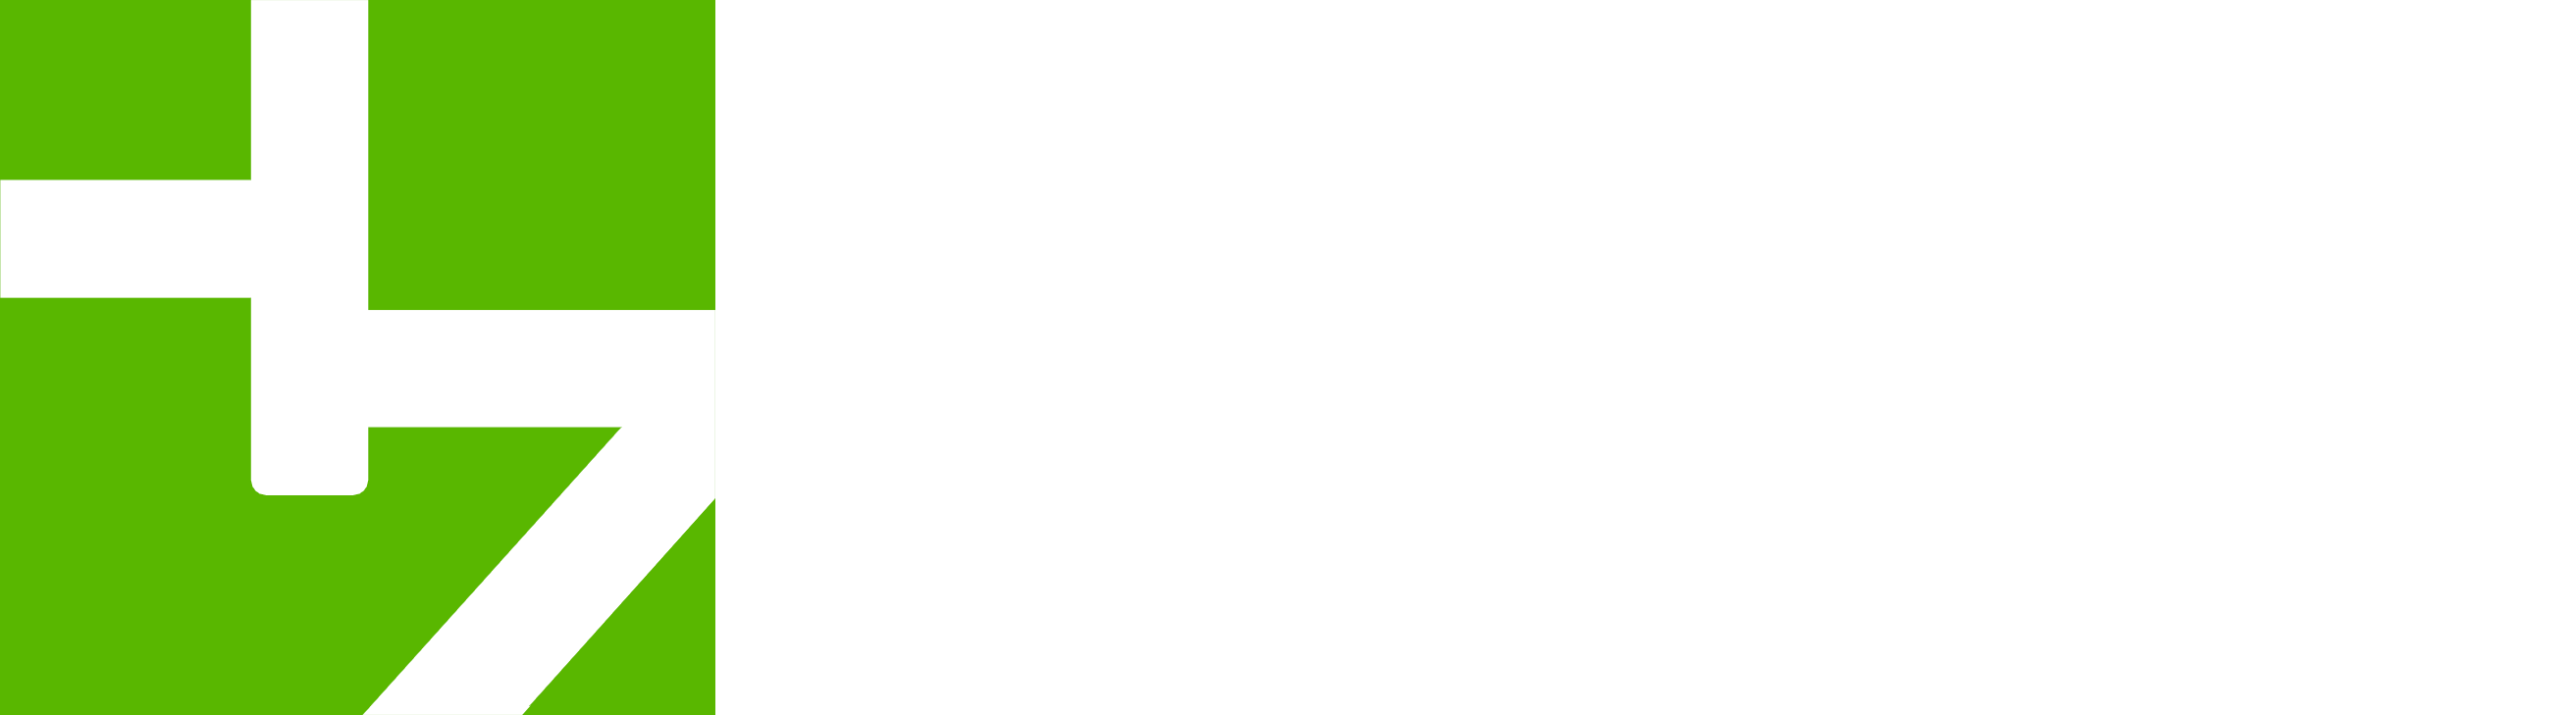 Hyzen Technologies